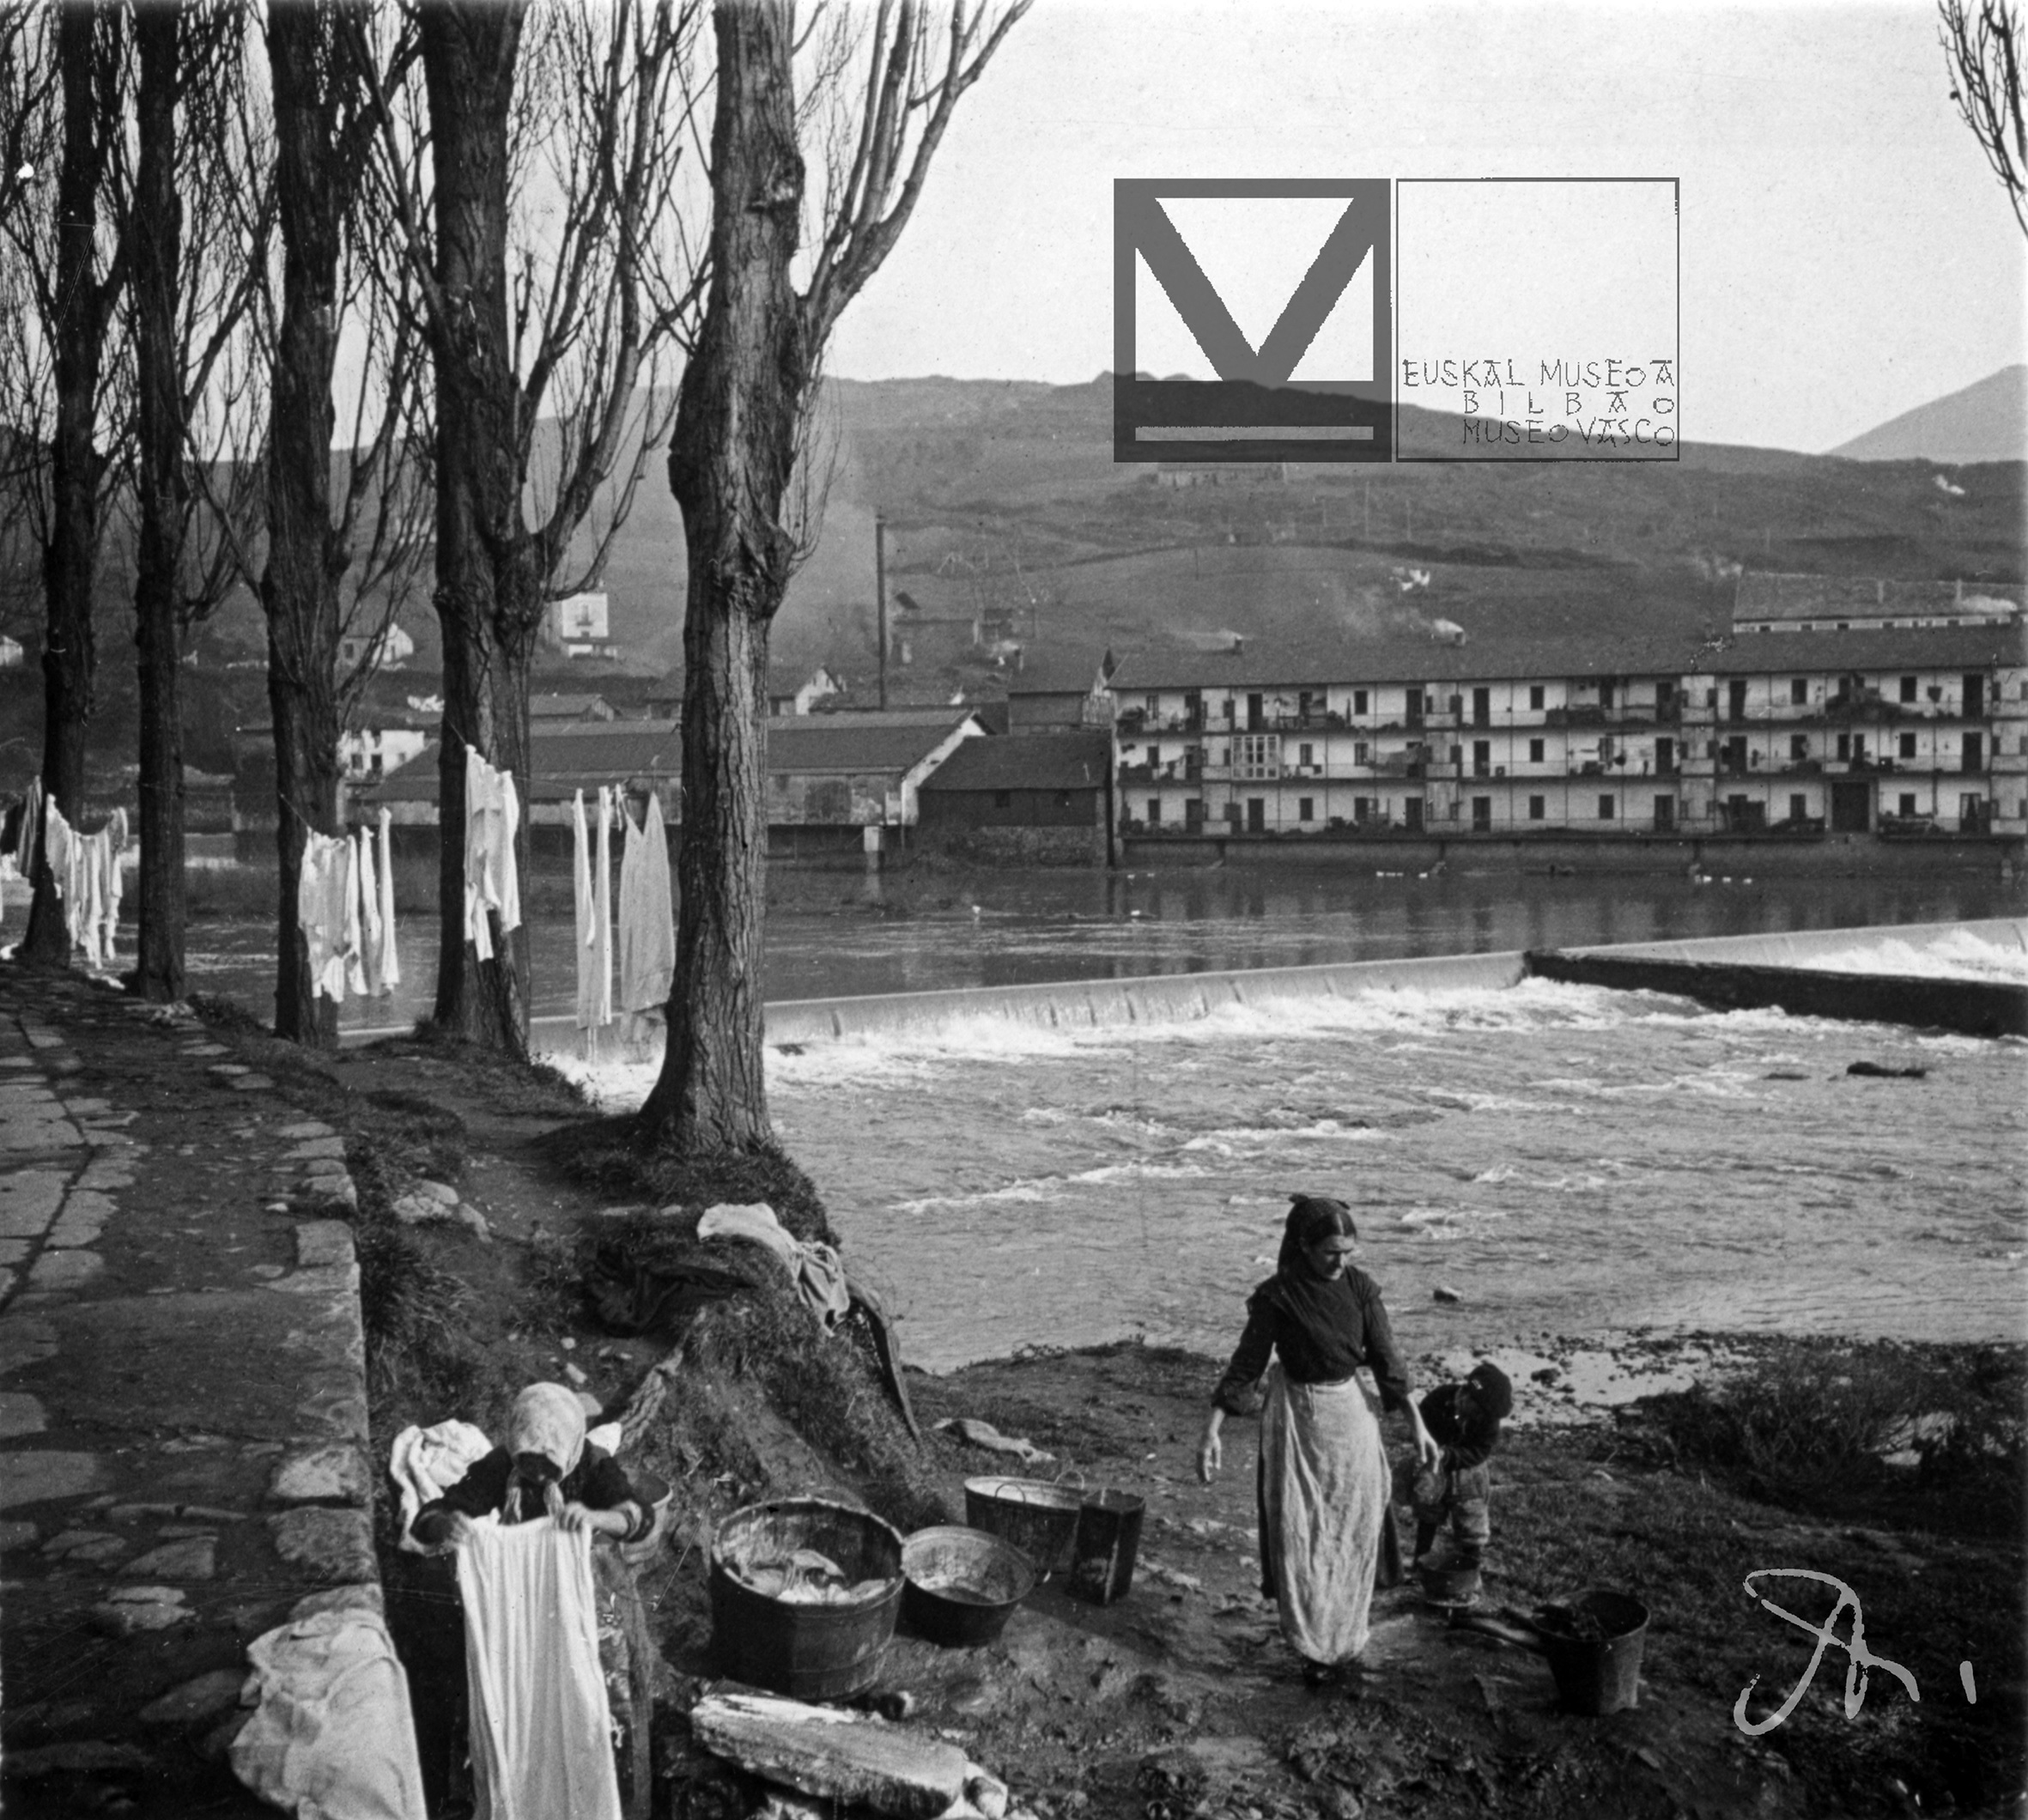 Lavanderas en el paseo de Los Caños. Fotografía de Eulalia Abaitua. Cortesía de Euskal Museoa Bilbao Museo Vasco.